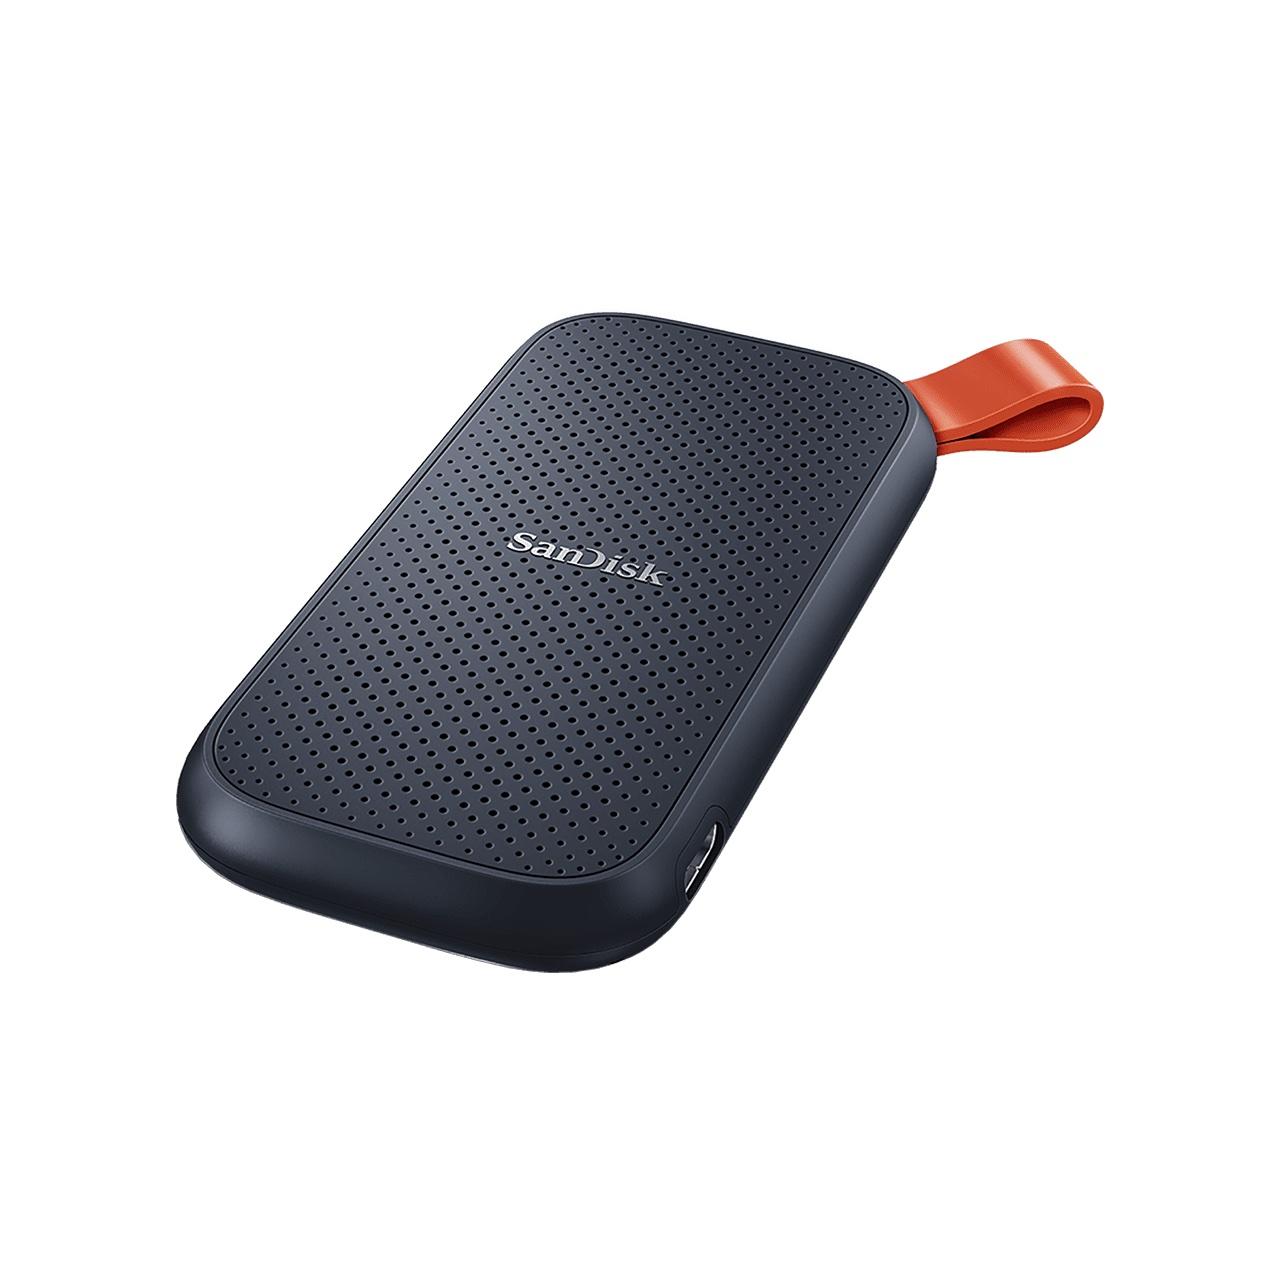 Външен SSD SanDisk Portable, 2TB, USB 3.2, Type-C, Черен